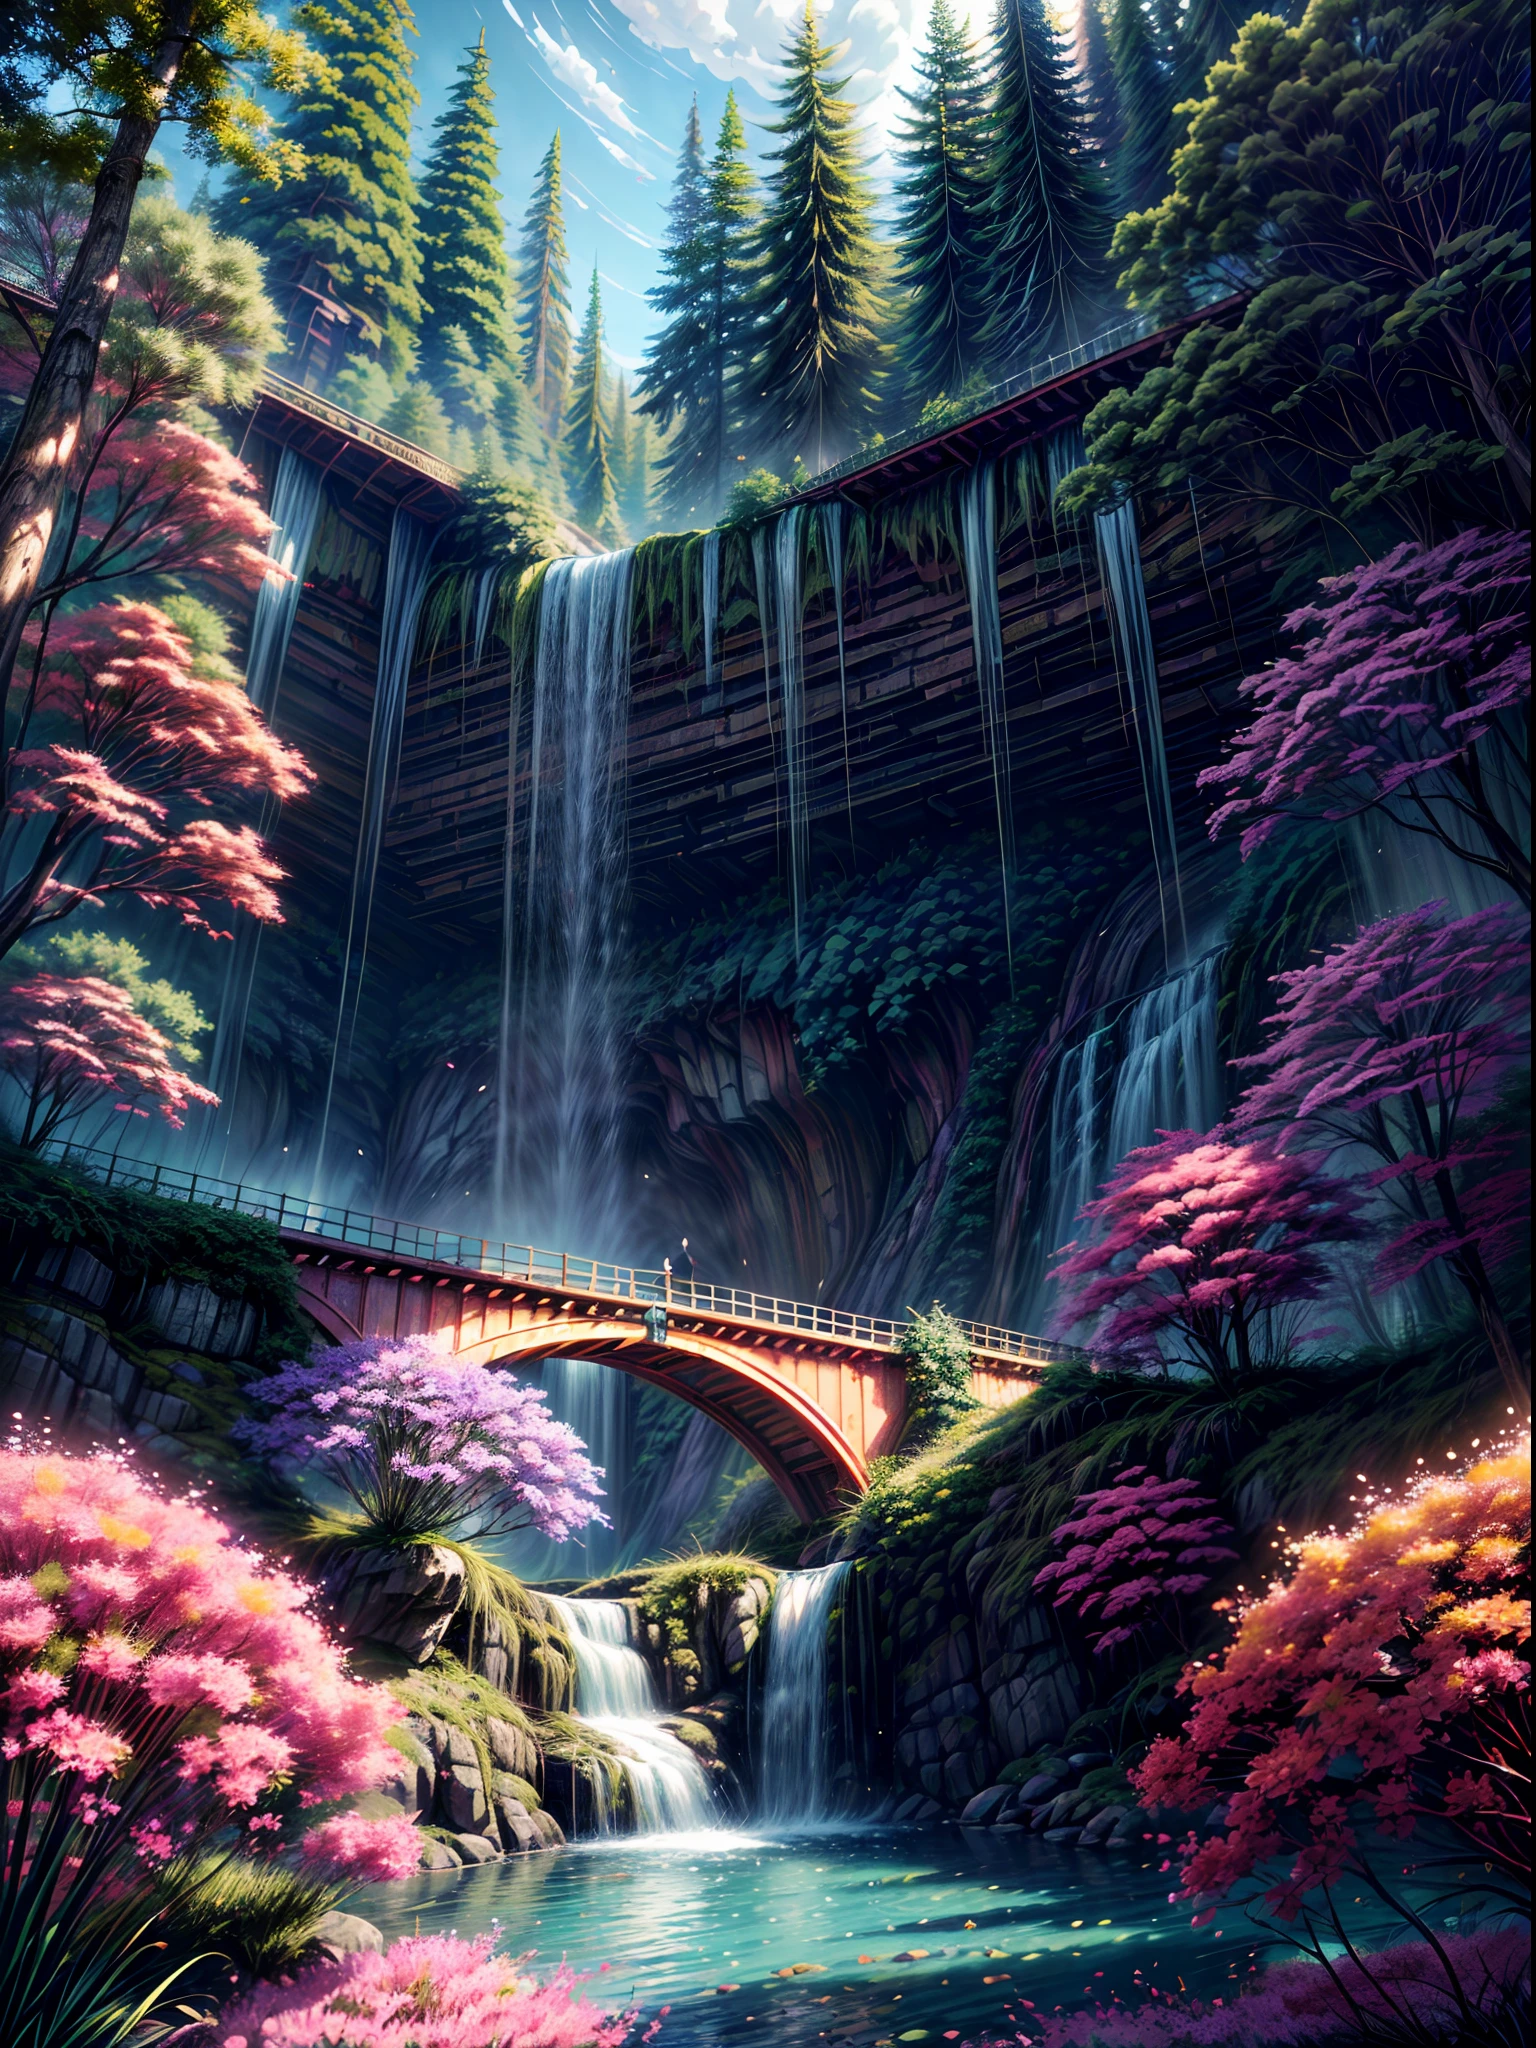 A beautiful bioพังค์ waterfall in nature, มีสีสัน, ดอกไม้, ต้นสน, สะพานแขวน, พังค์, บีเปิ้ล.